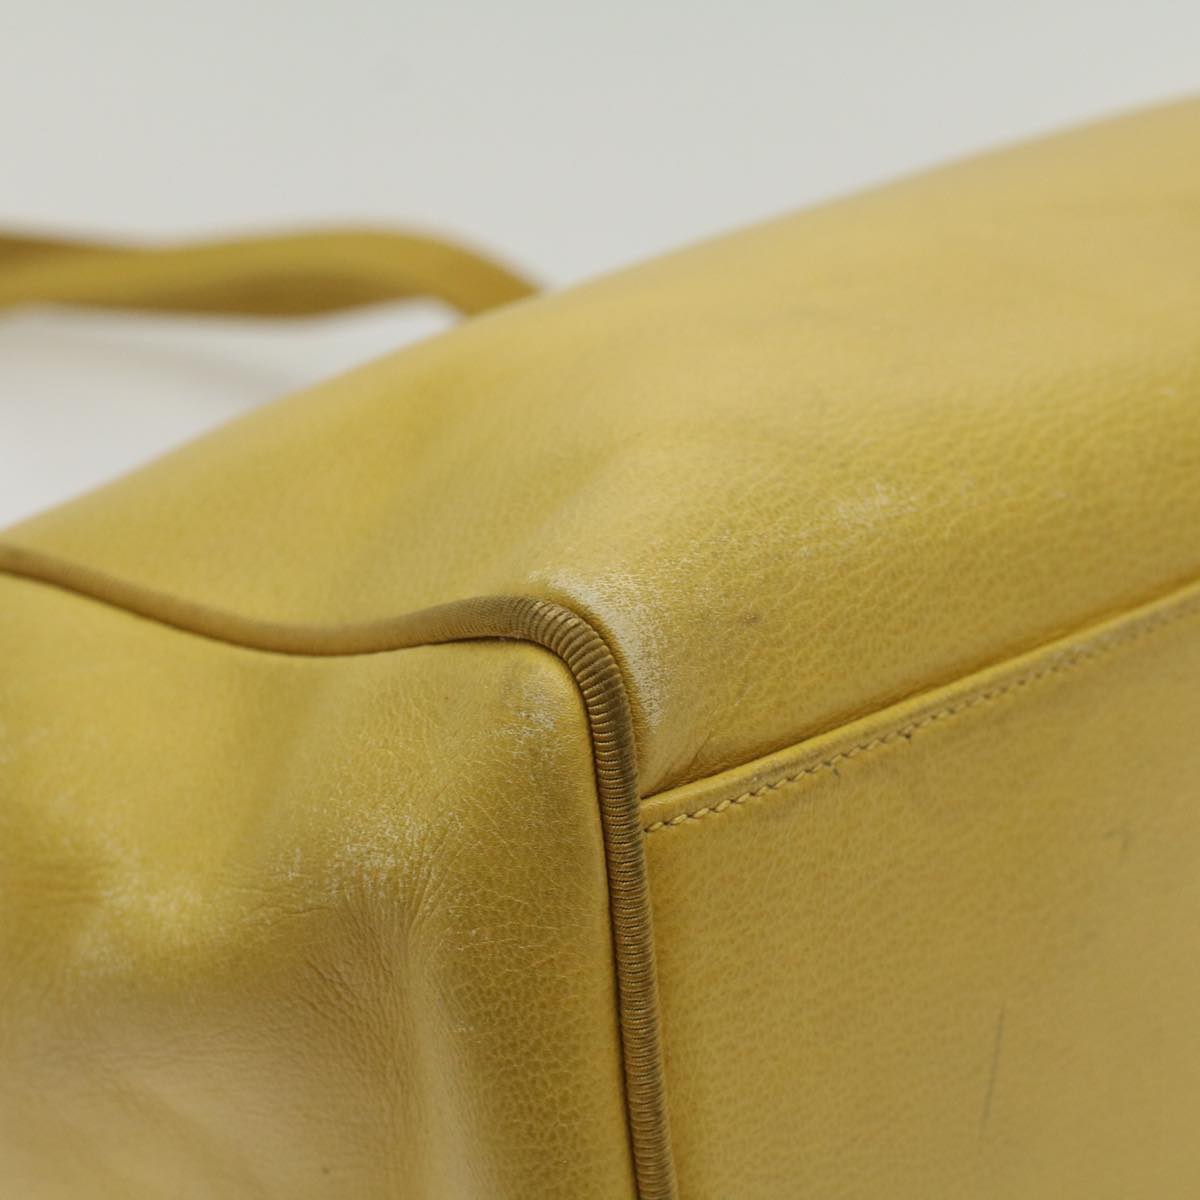 Salvatore Ferragamo Tote Bag Leather Yellow Auth 56193